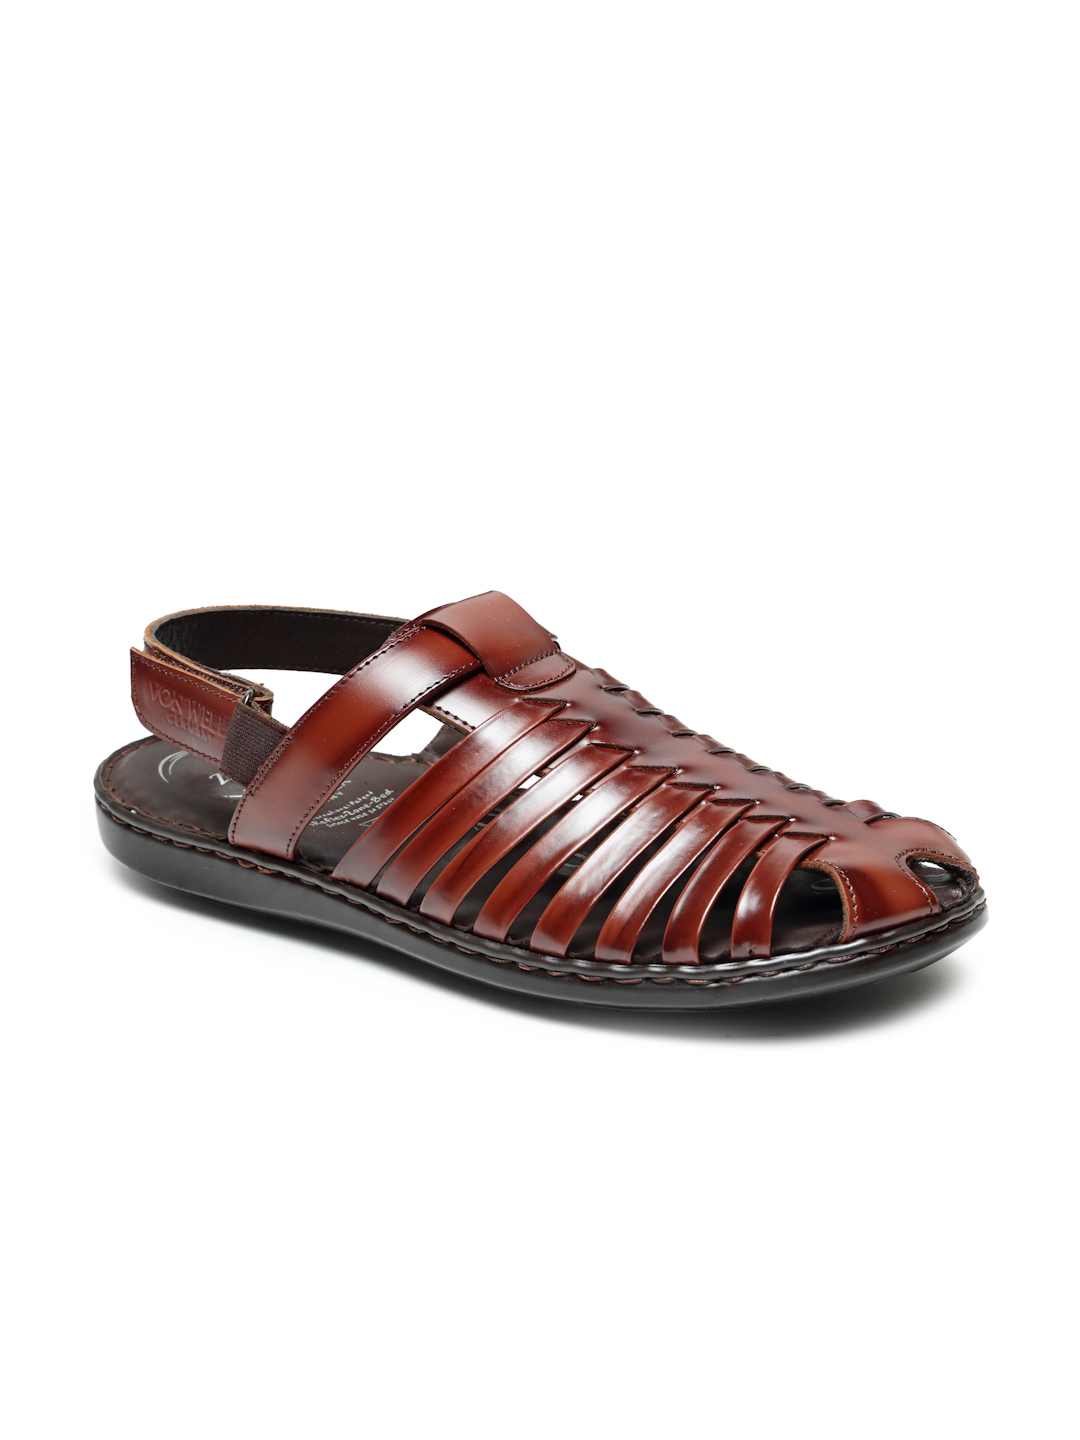 VON WELLX GERMANY comfort men's tan sandal VOLKER